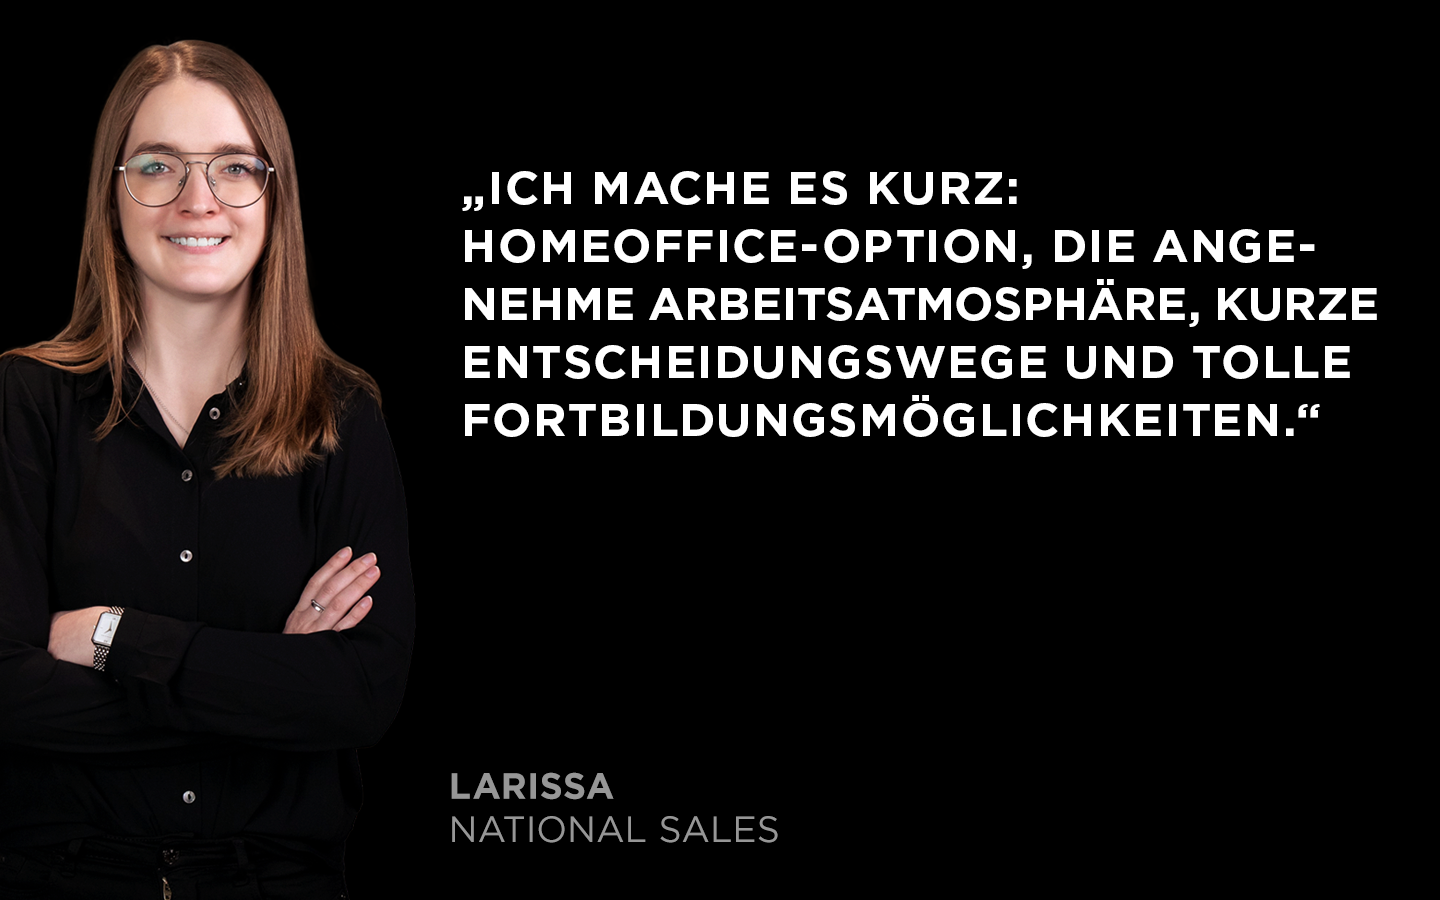 Zitat von Larissa aus dem Team National Sales: WAS Germany bietet mir Homeoffice-Option, eine angenehme Arbeitsatmosphäre, kurze Entscheidungswege und tolle Fortbildungsmöglichkeiten.